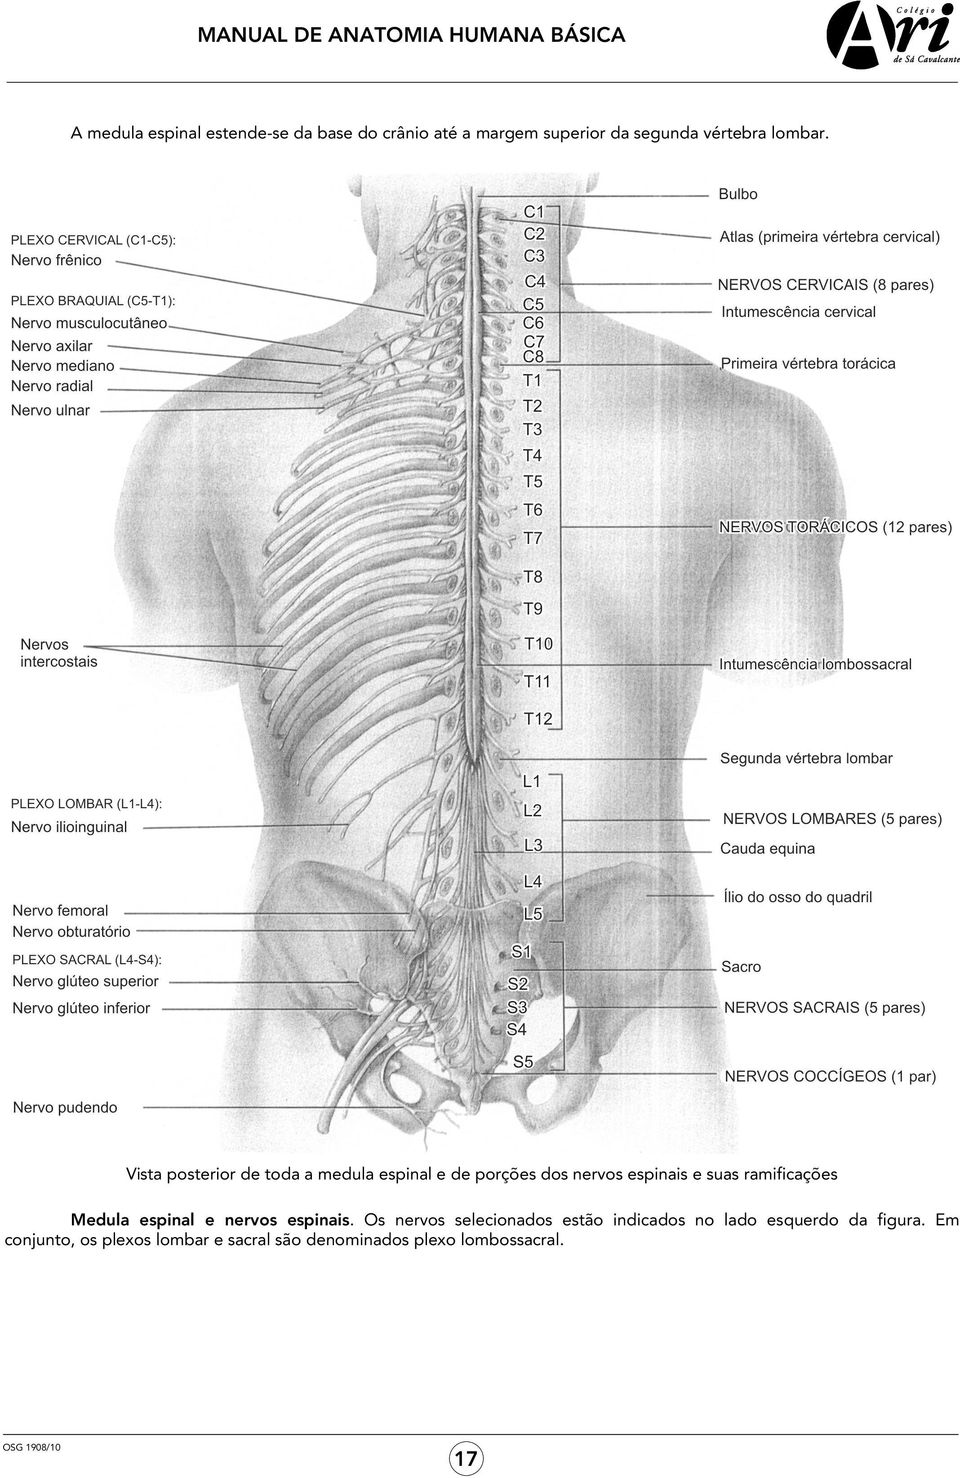 Vista posterior de toda a medula espinal e de porções dos nervos espinais e suas